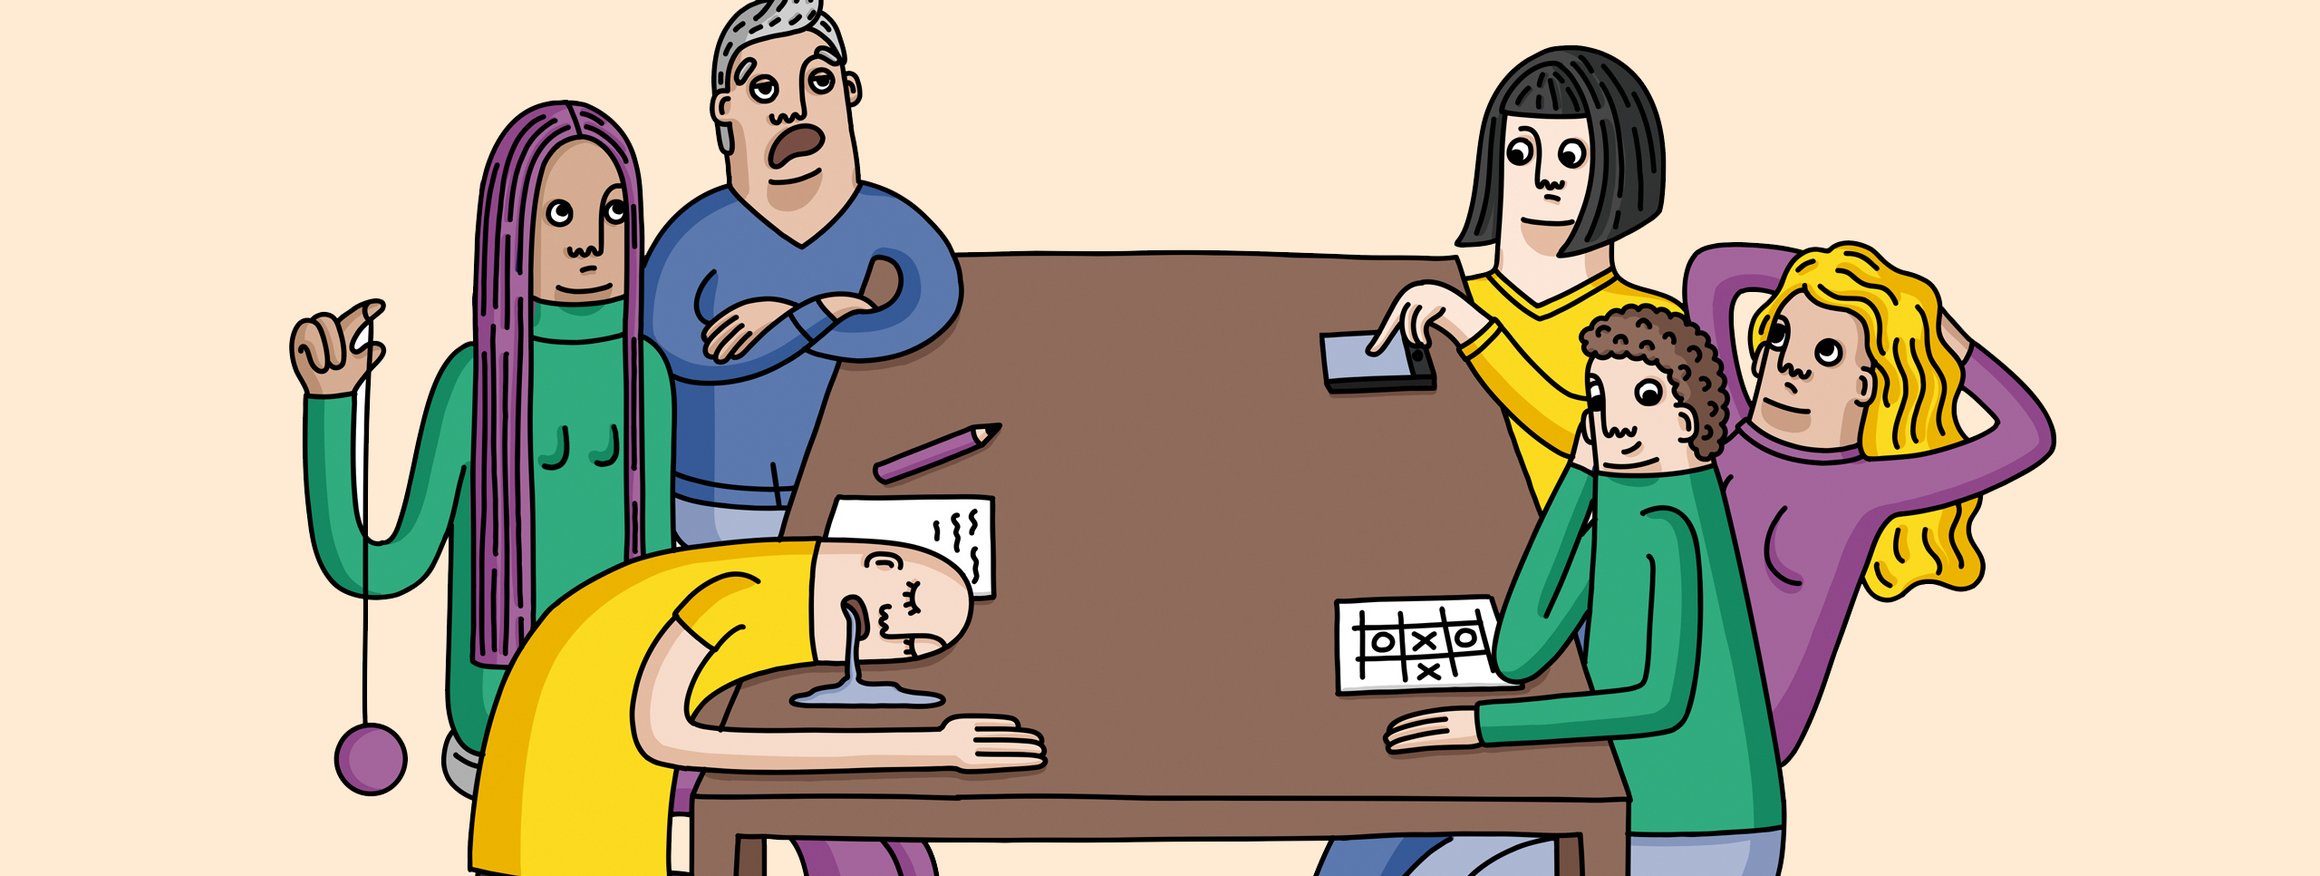 Die Illustration zeigt eine Gruppe von Personen bei einem Meeting an einem Tisch und alle langweilen sich